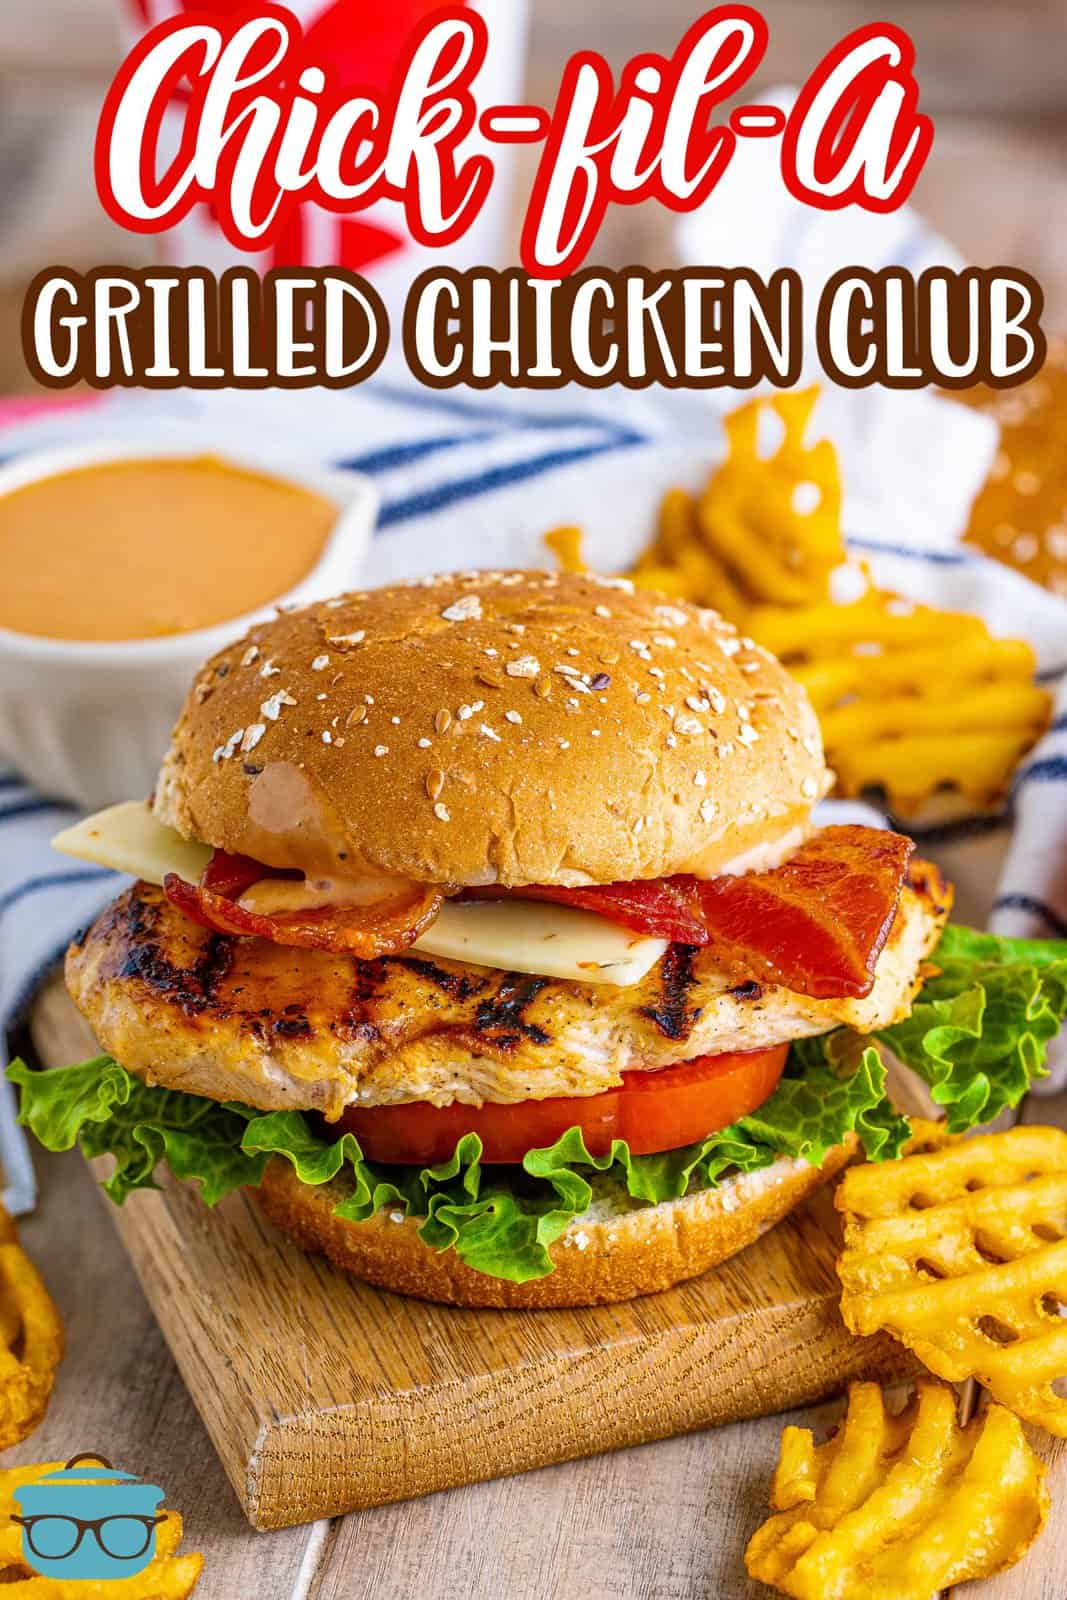 Immagine Pinterest di Chick-fil-A Sandwich di pollo alla griglia rifinito su una tavola di legno con i lati accanto.